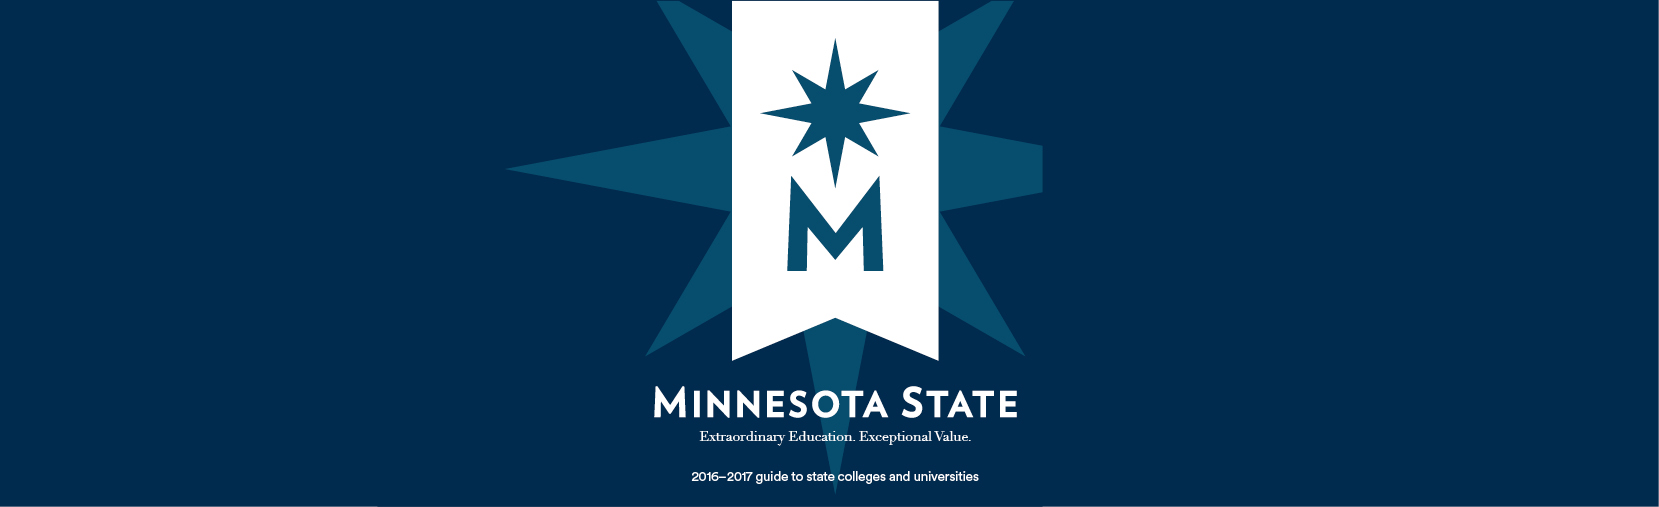 Minnesota State brand standards